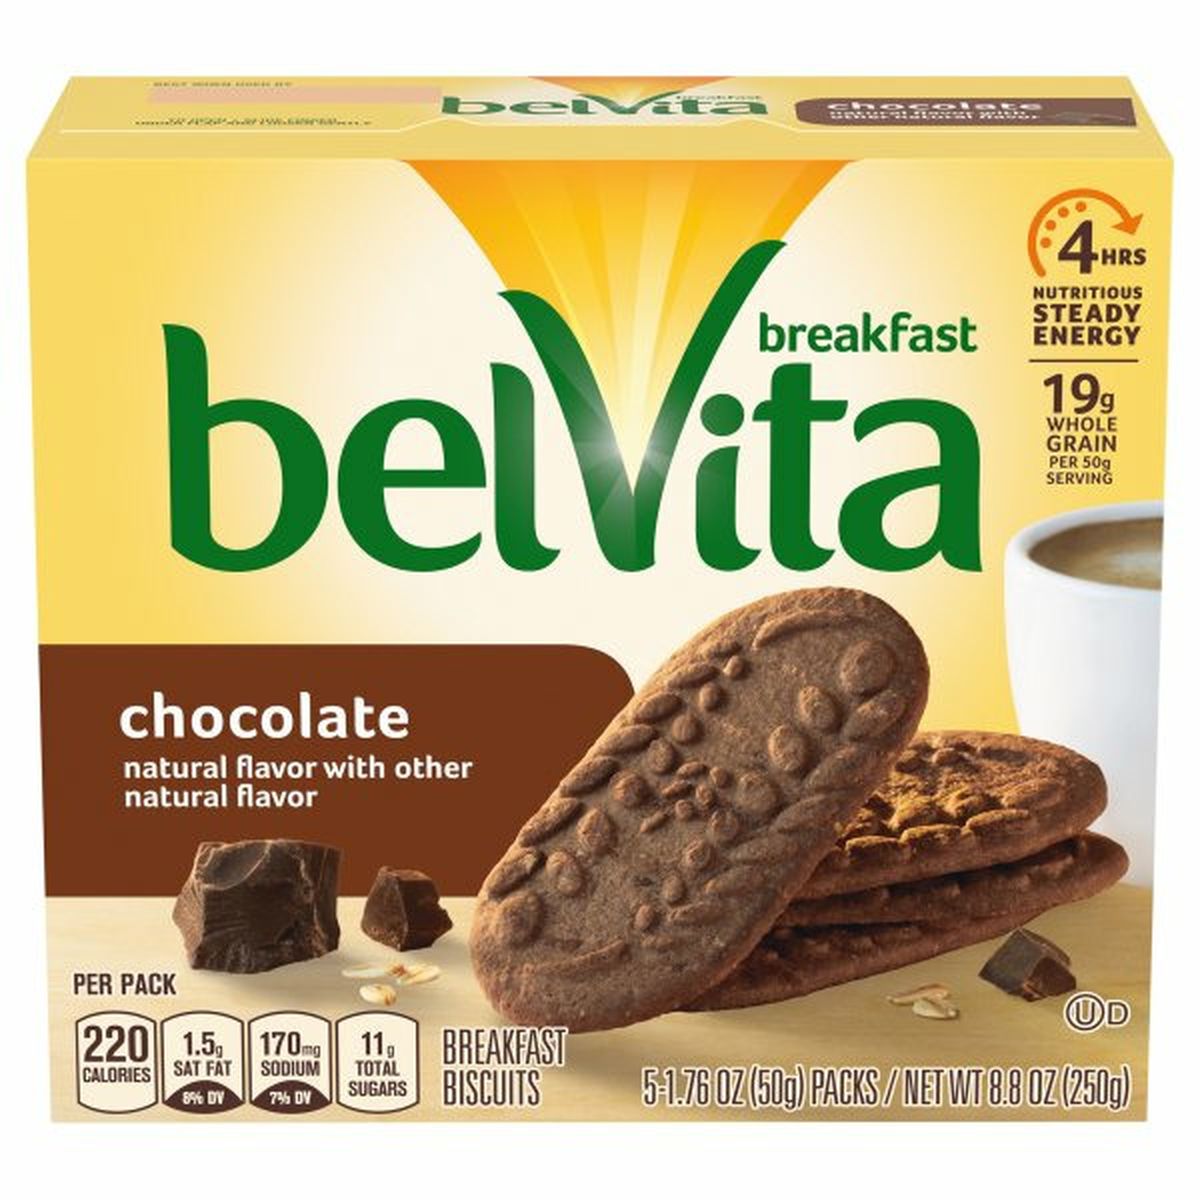 Calories in belVita Breakfast Biscuits, Chocolate